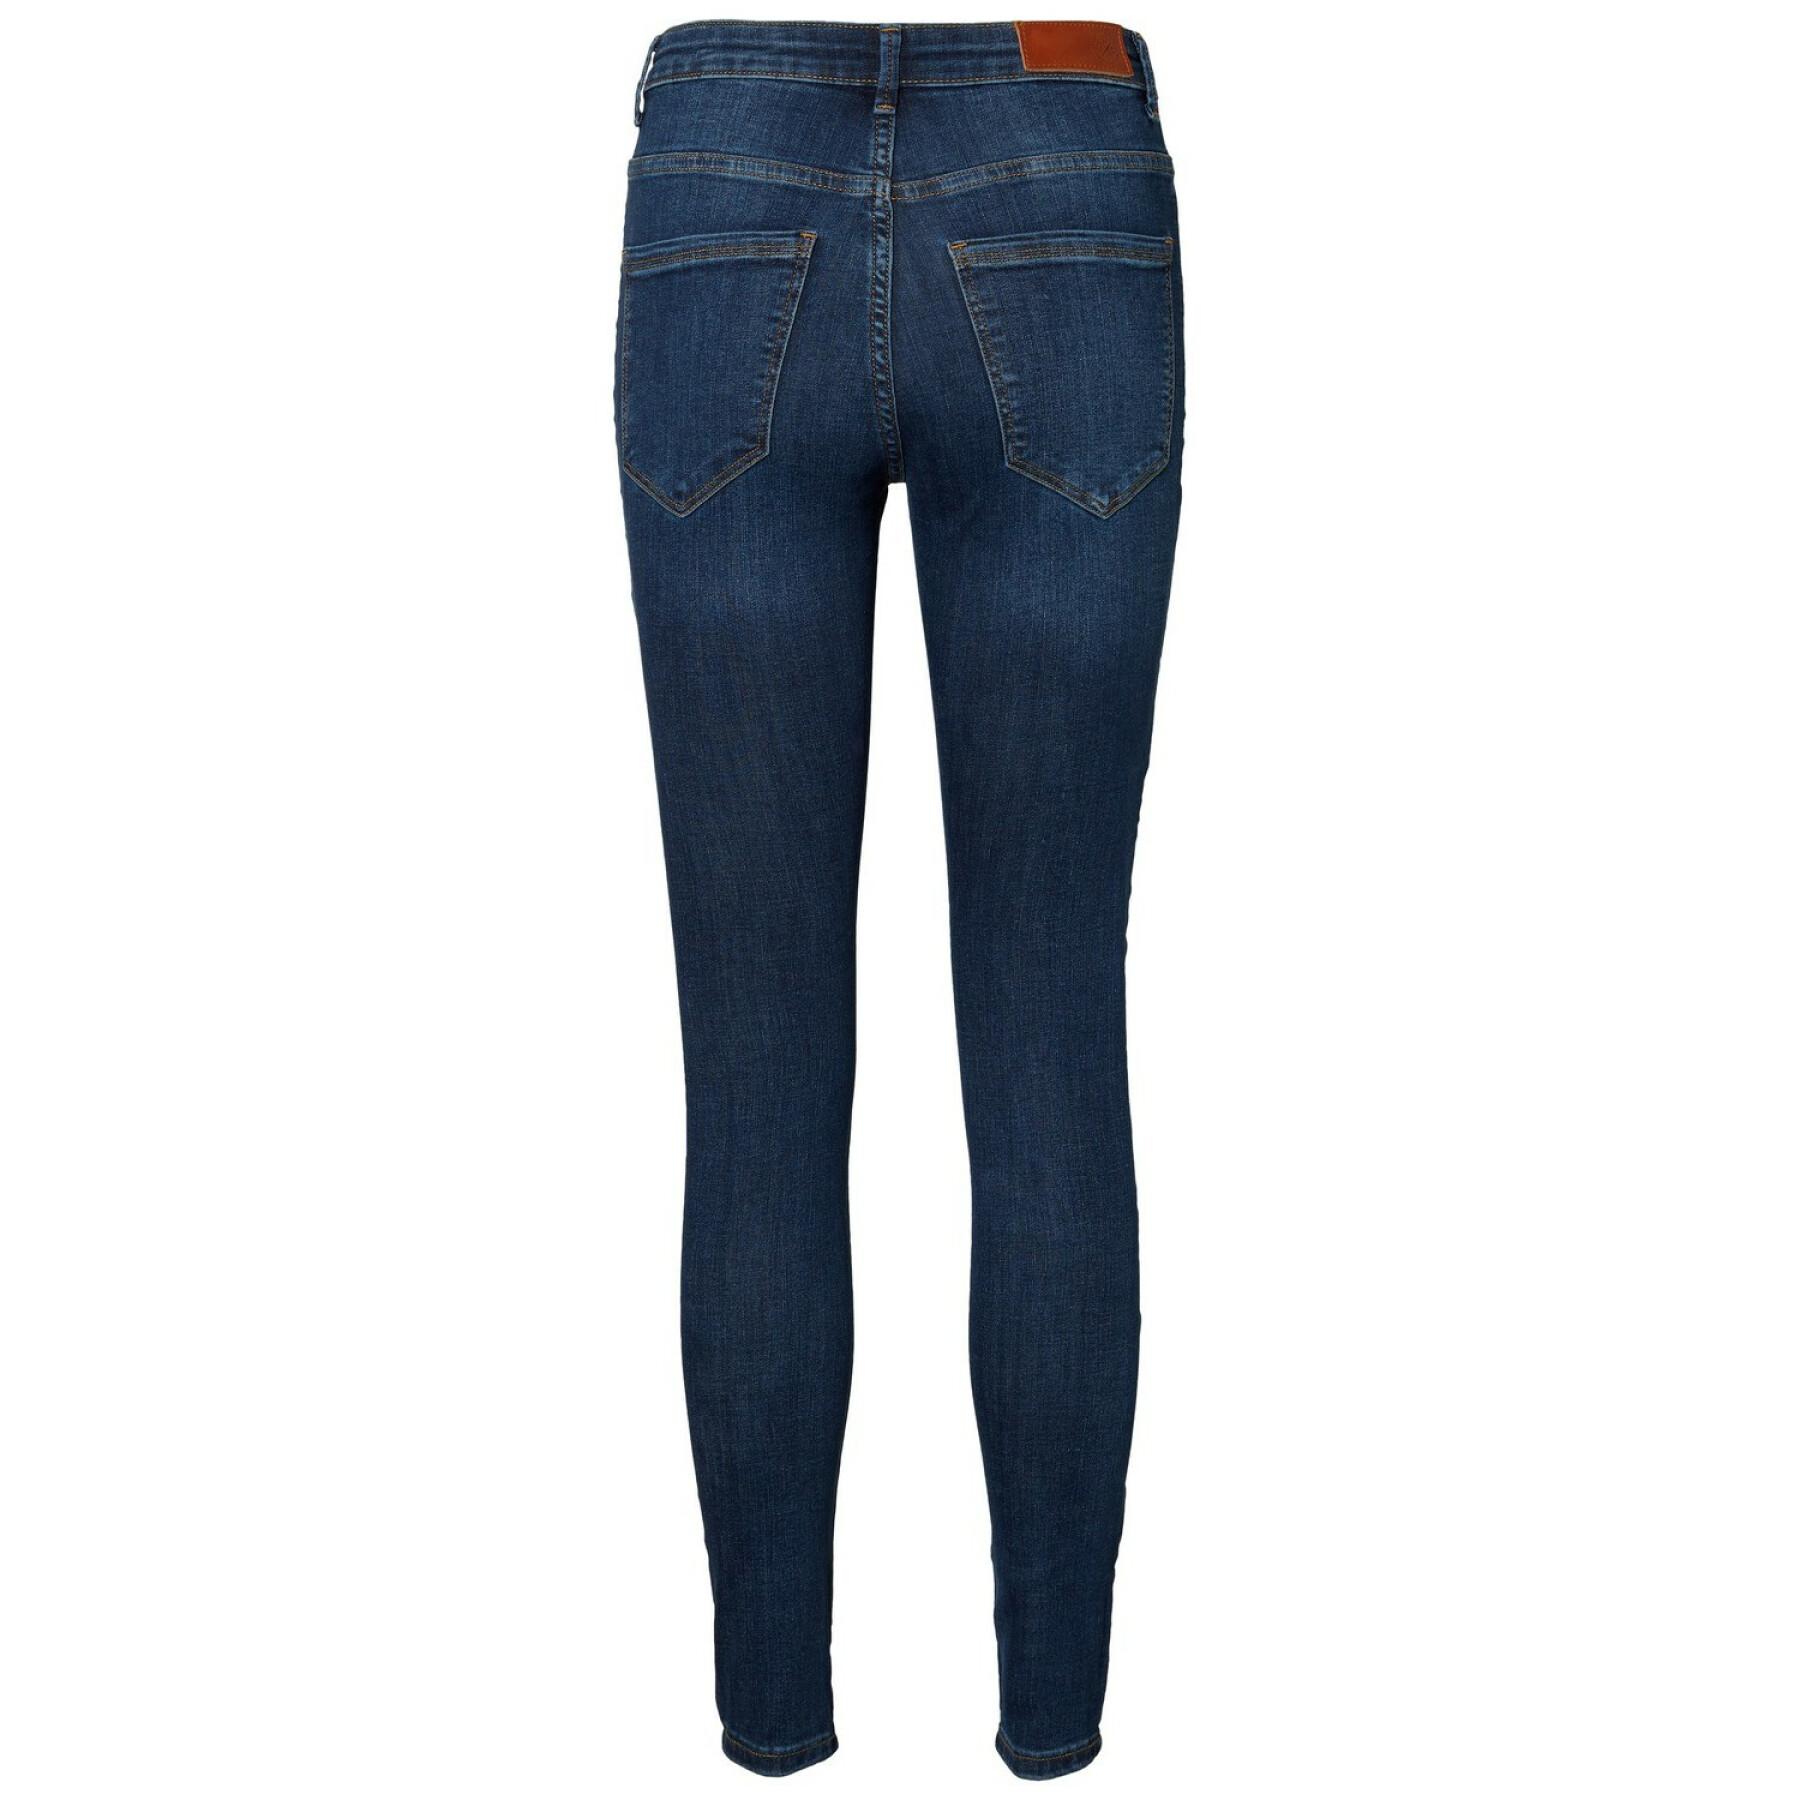 Damskie skinny jeans Vero Moda vmsophia